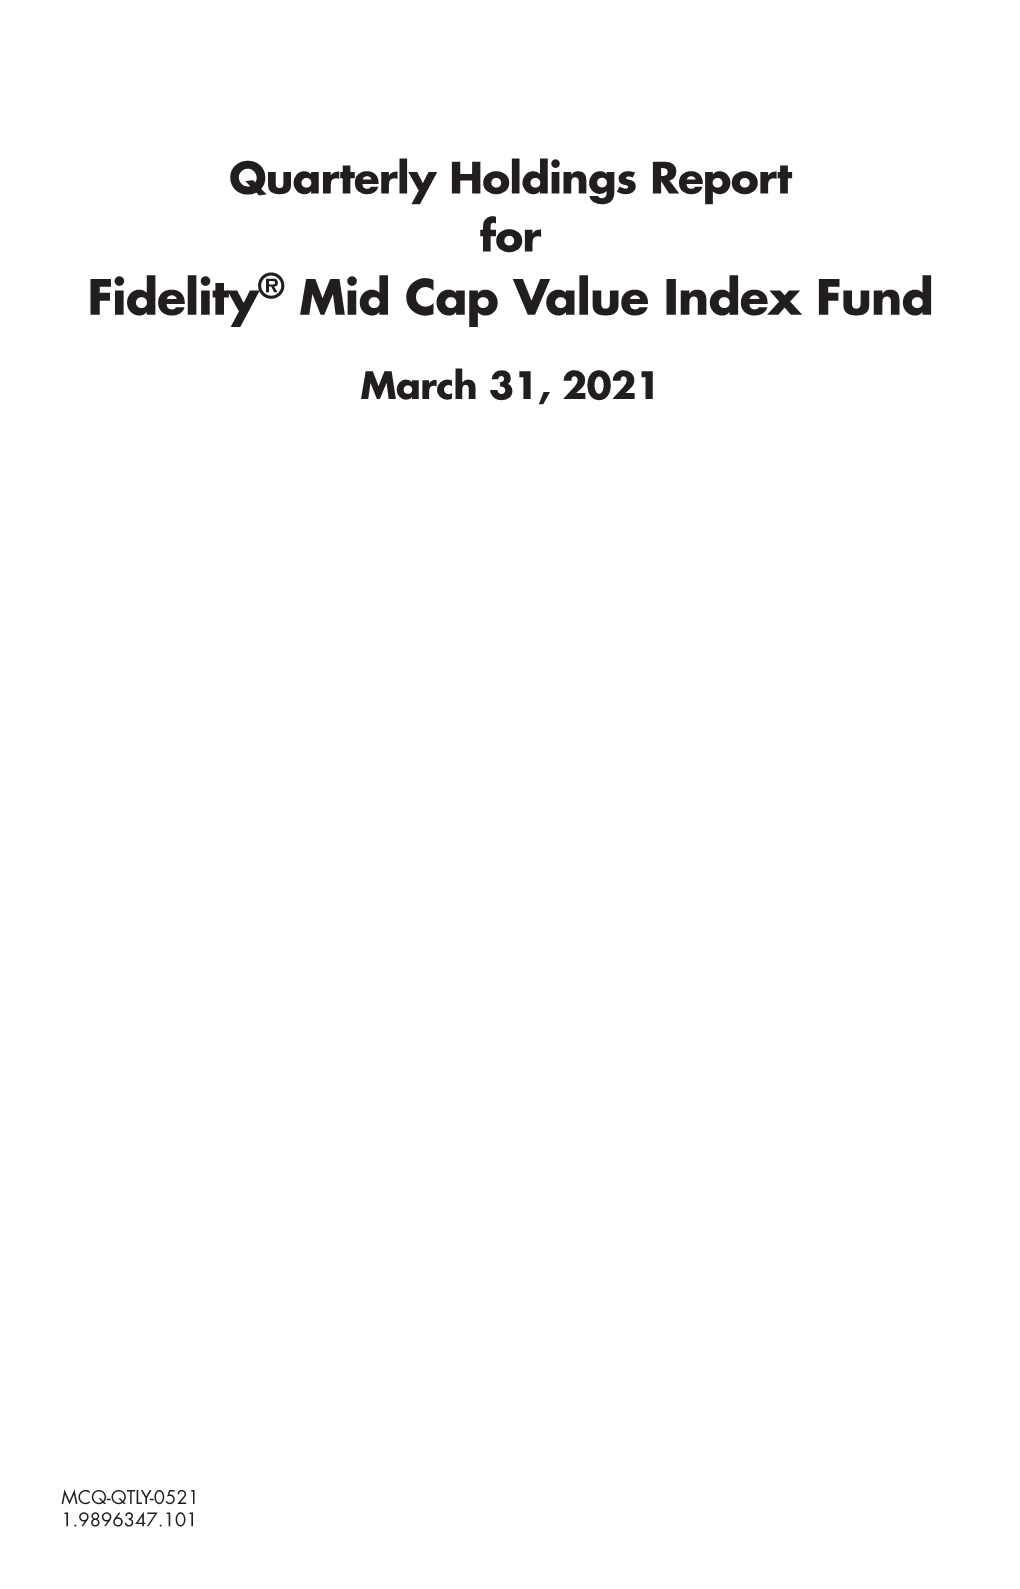 Fidelity® Mid Cap Value Index Fund